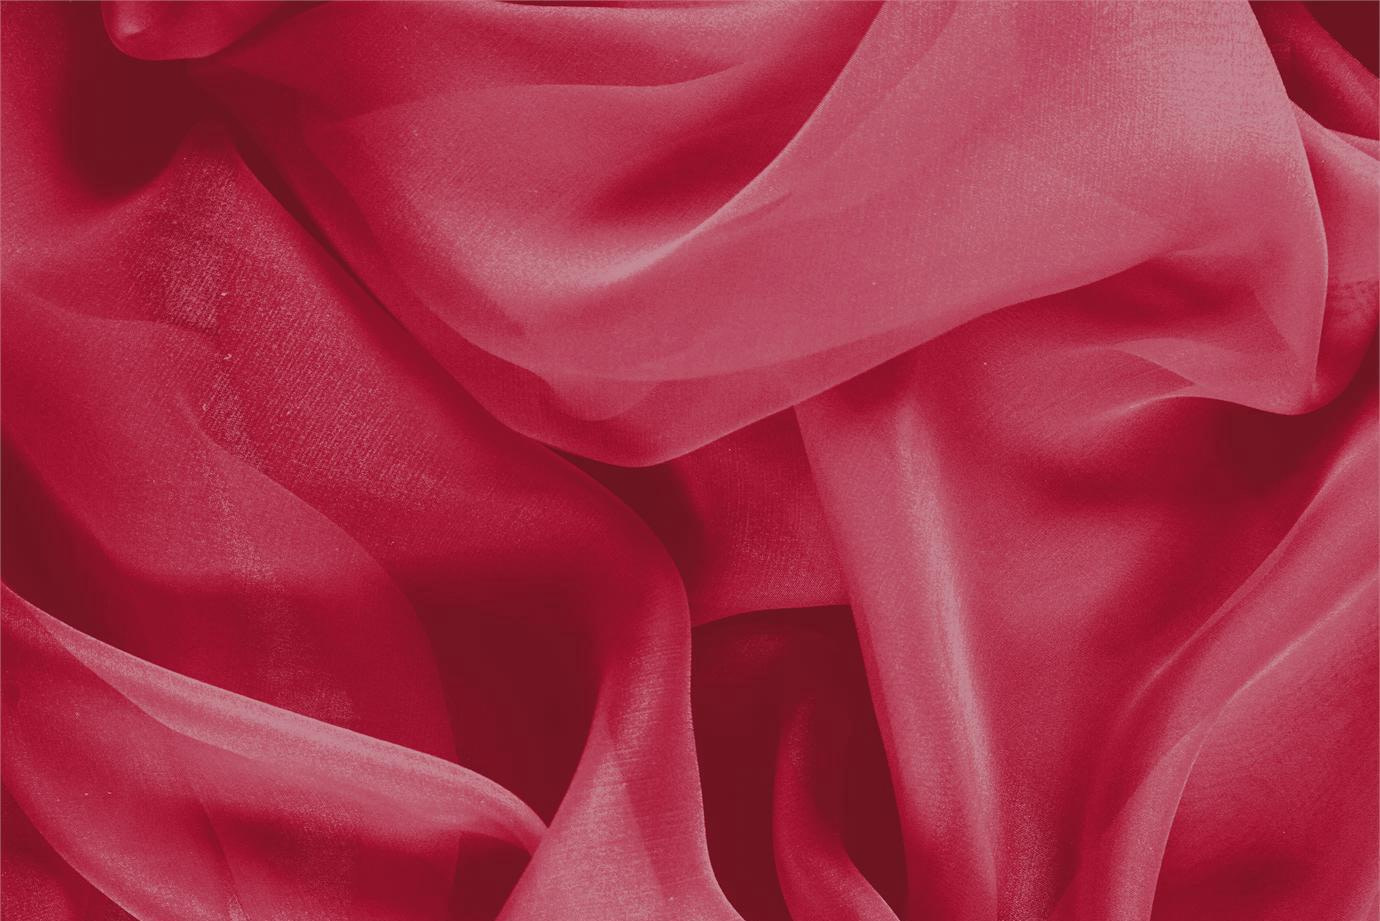 Tessuto Chiffon Rosso Rubino in Seta per abbigliamento